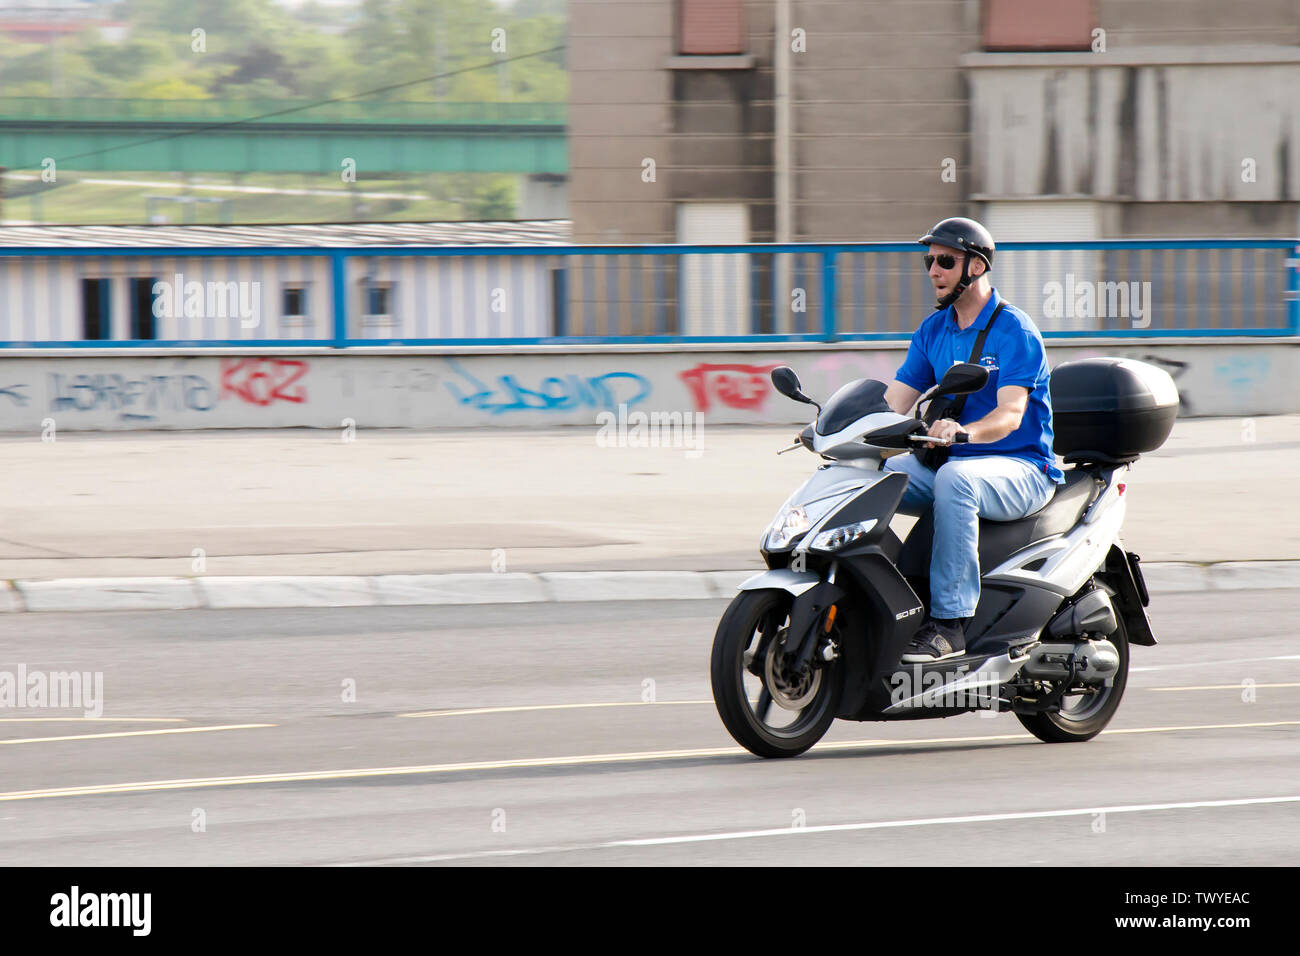 Belgrade, Serbie - Avril 26, 2019 : One man riding scooter moto sur le pont à la circulation de la rue de la ville Banque D'Images